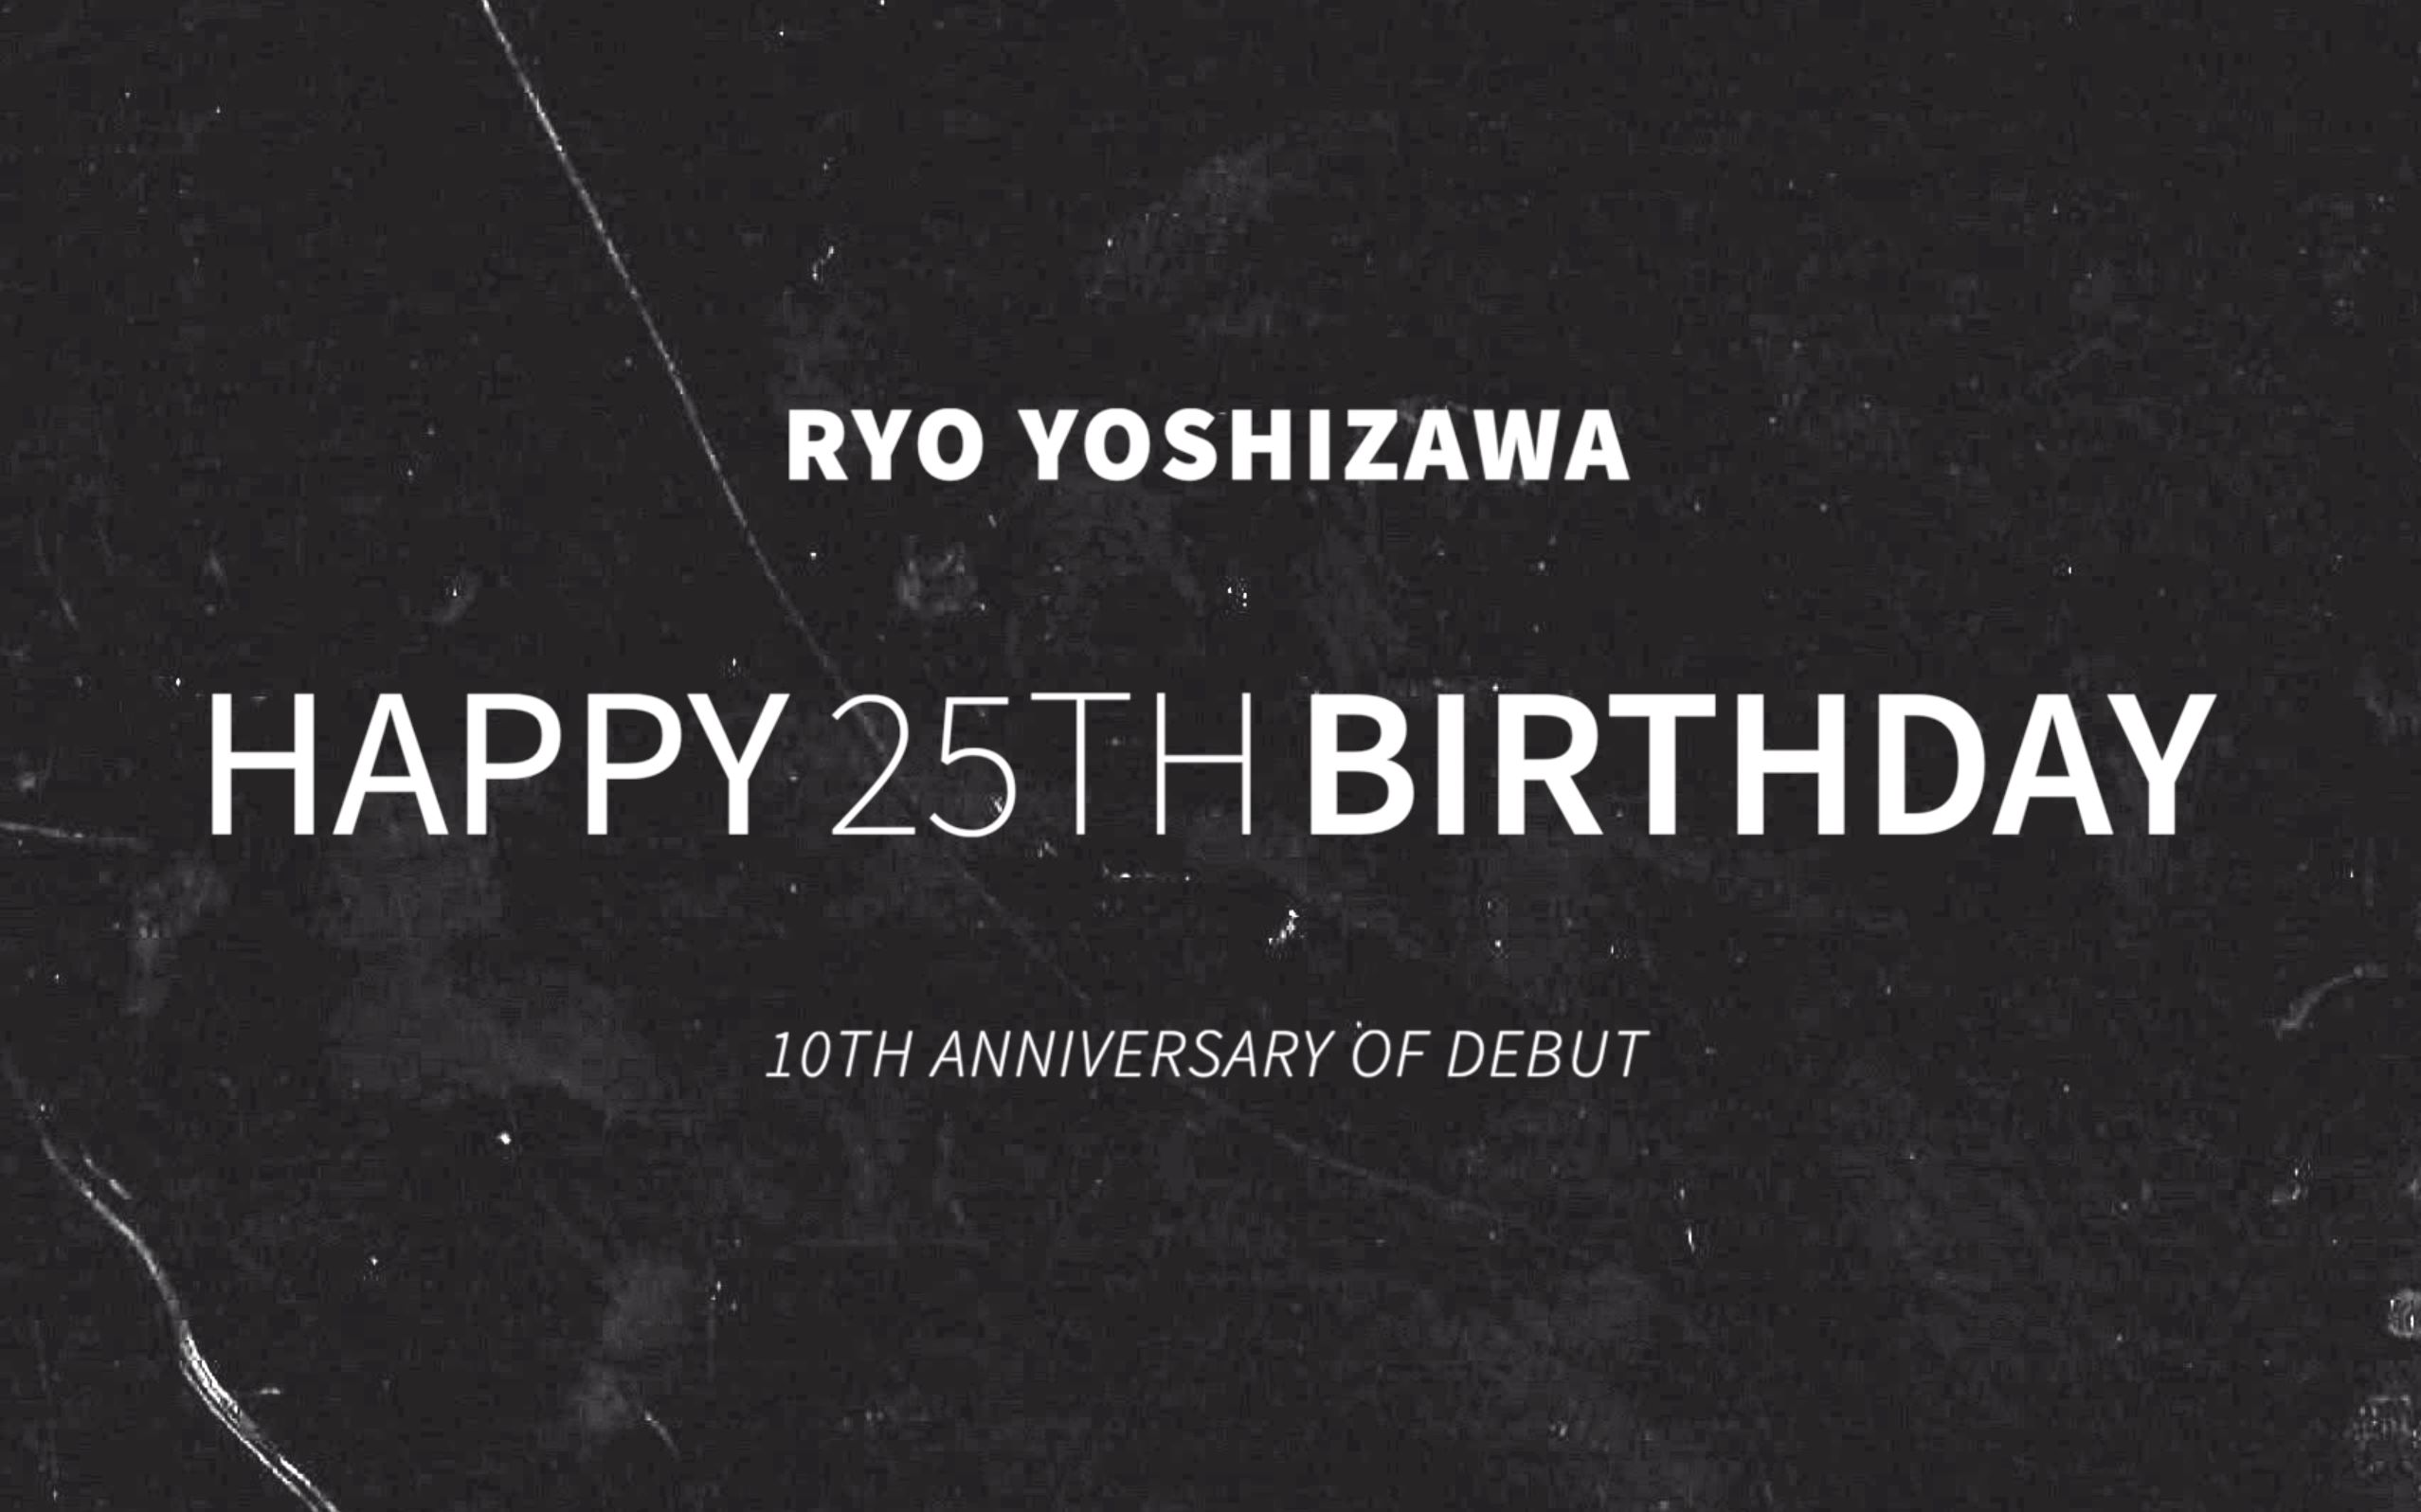 【吉沢亮情报站】HAPPY 25TH BIRTHDAY to RYO YOSHIZAWA